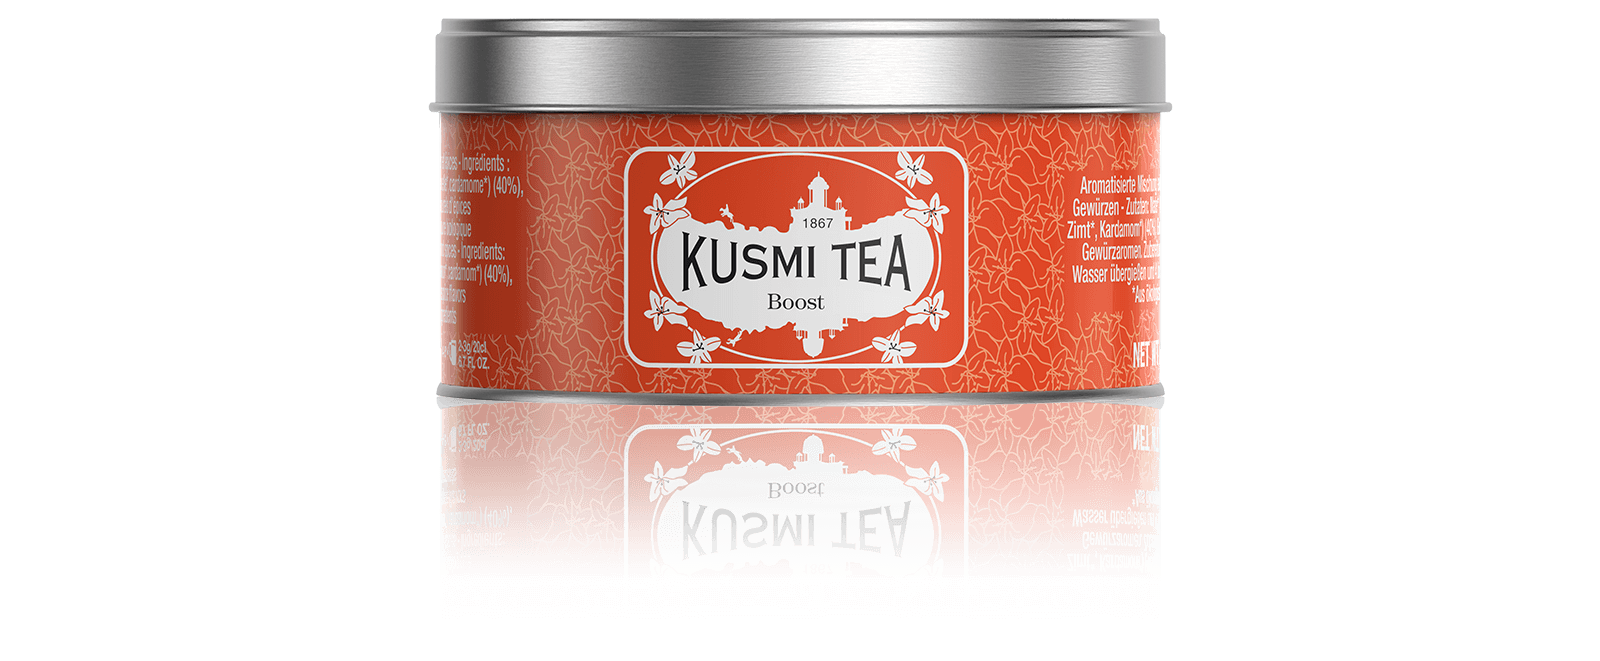 Boost bio - Mélange aromatisé de maté, thé vert et épices - Boite à thé en vrac - Kusmi Tea